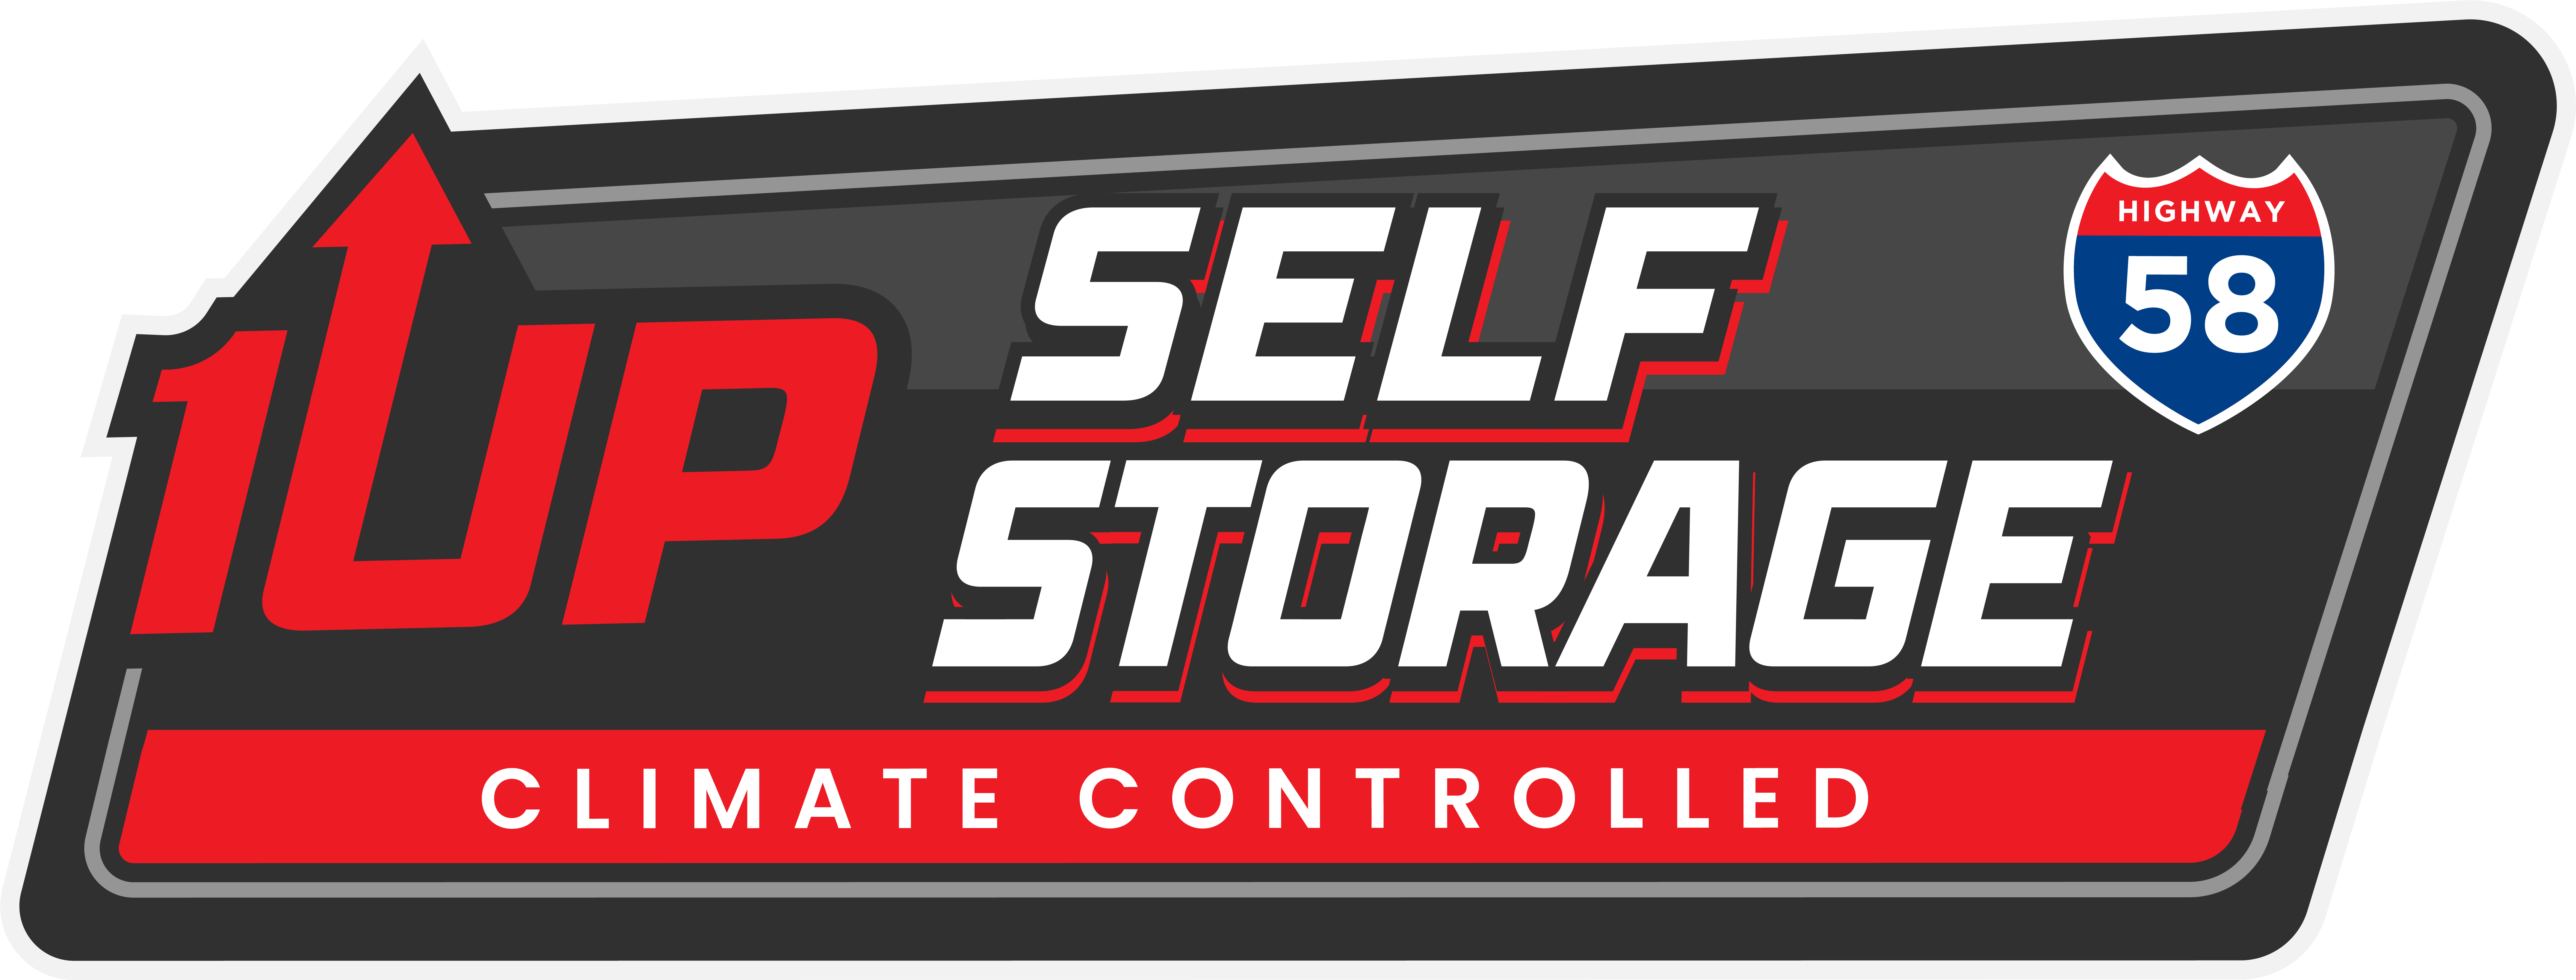 1up Self Storage